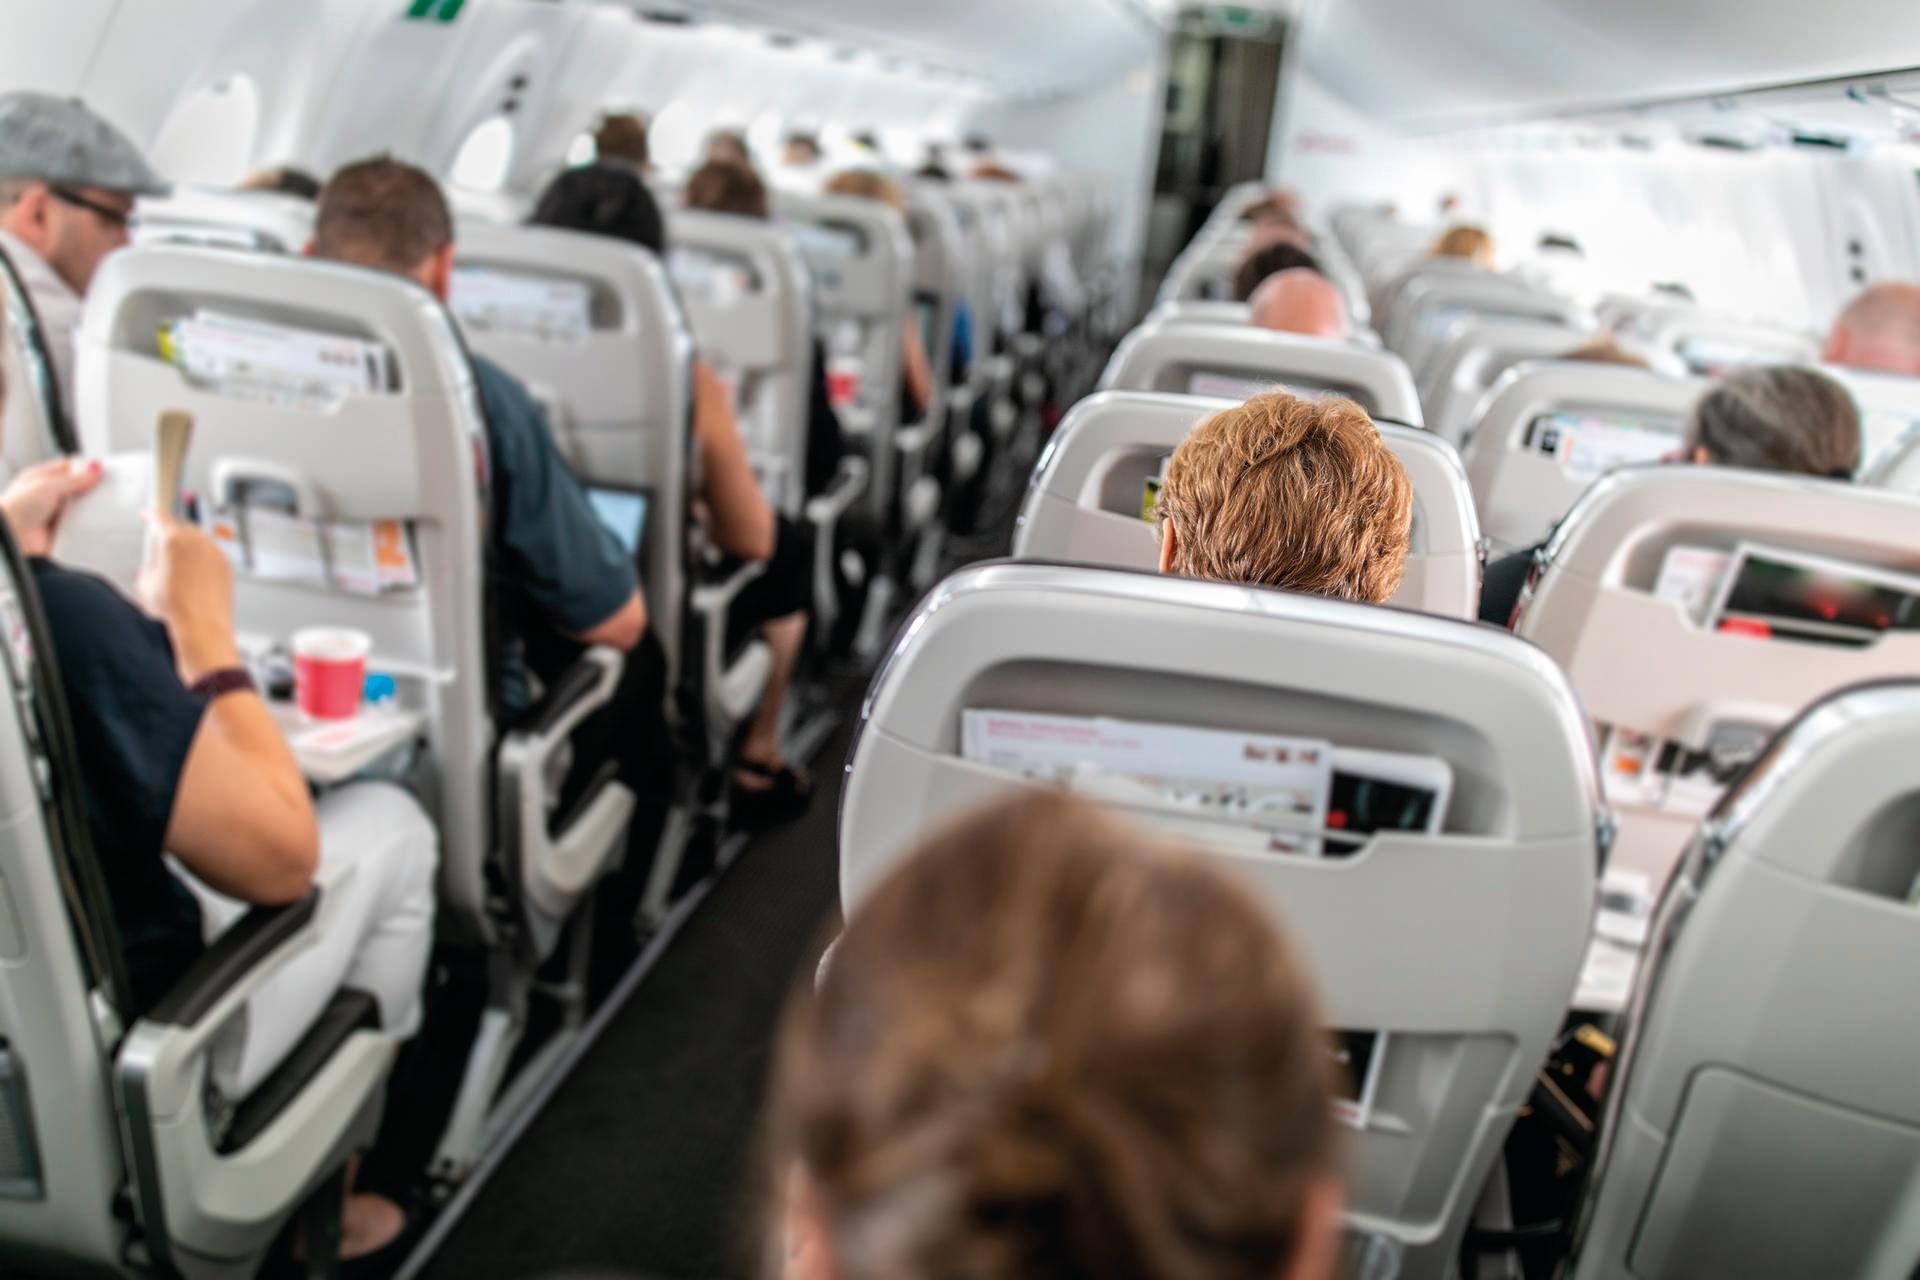 Innenraum eines Verkehrsflugzeugs mit Passagieren in ihren Sitzen während des Fluges.